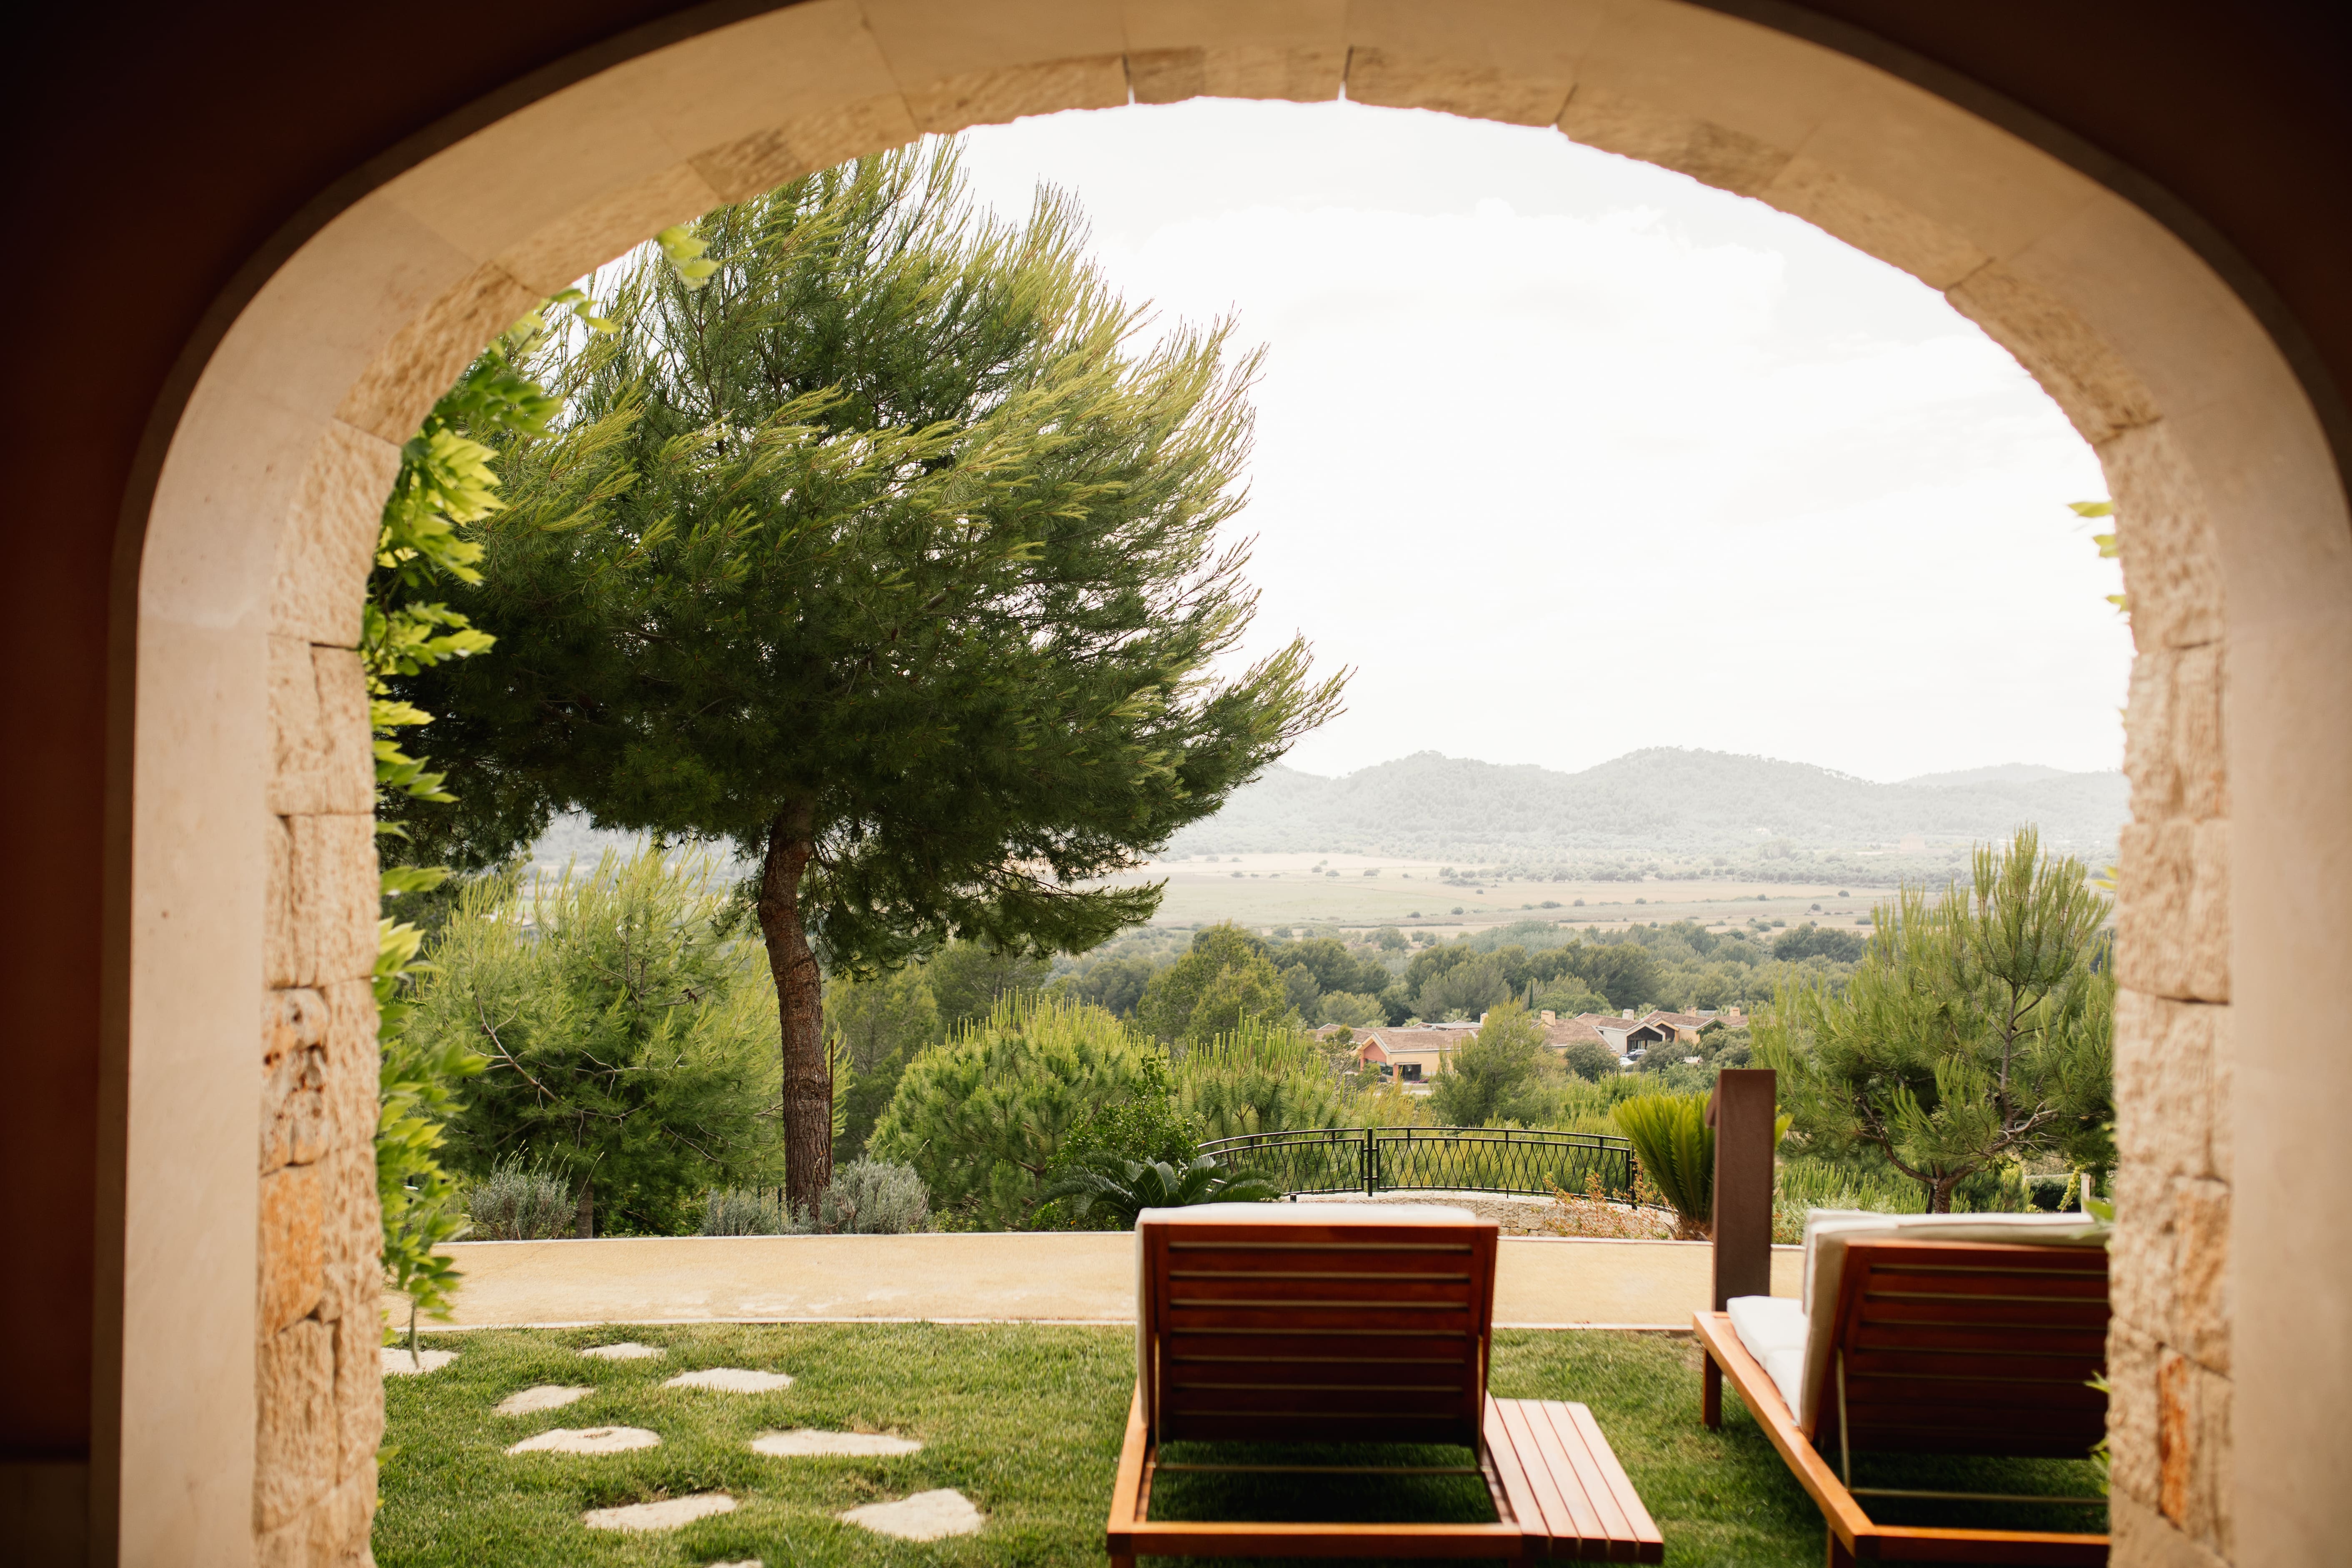 Impresionantes vistas desde la habitación de los novios del paisaje de Mallorca, con un horizonte panorámico.